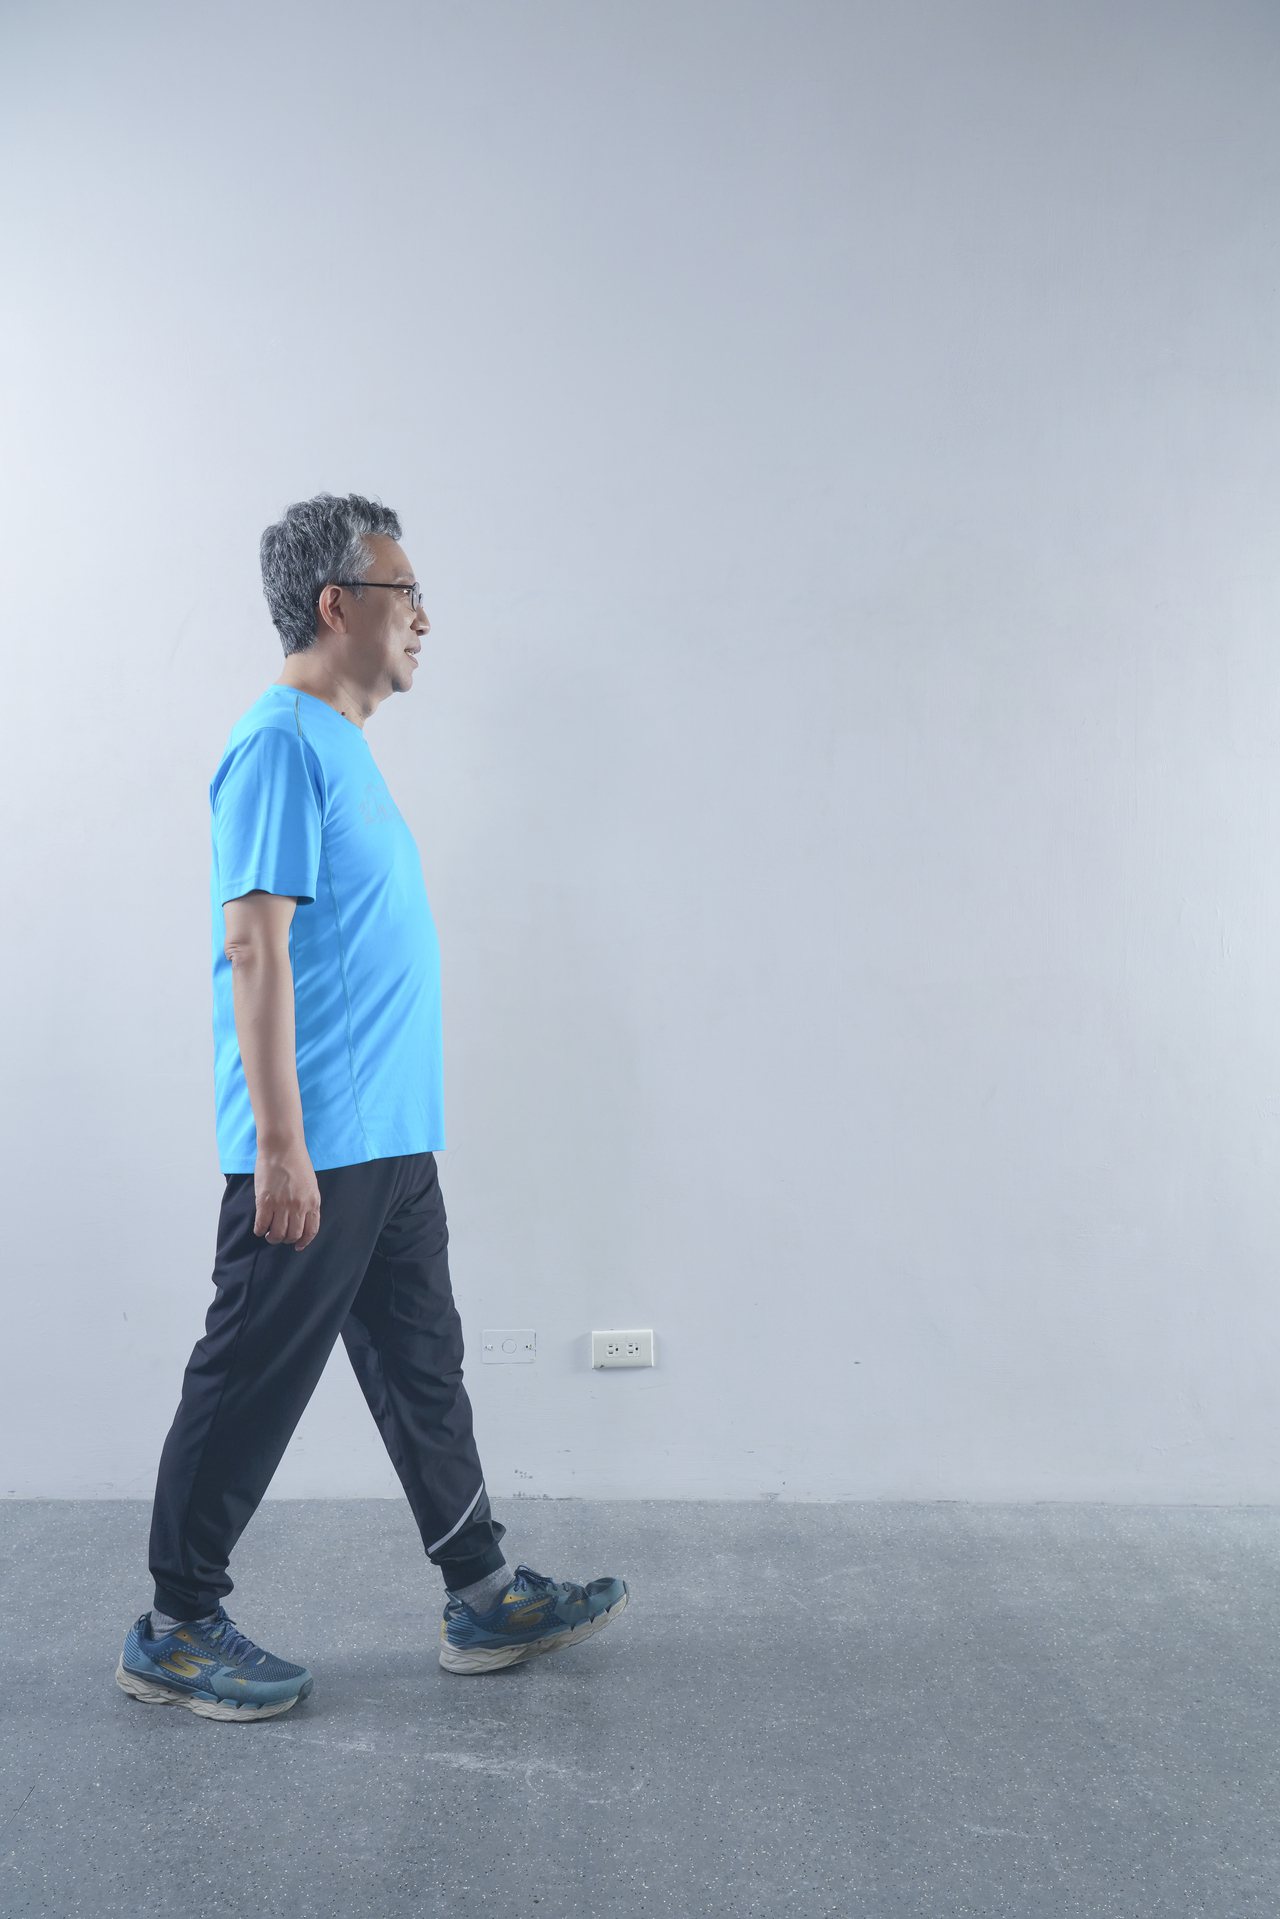 走路對於腿部的刺激並不大，不算肌力訓練。
